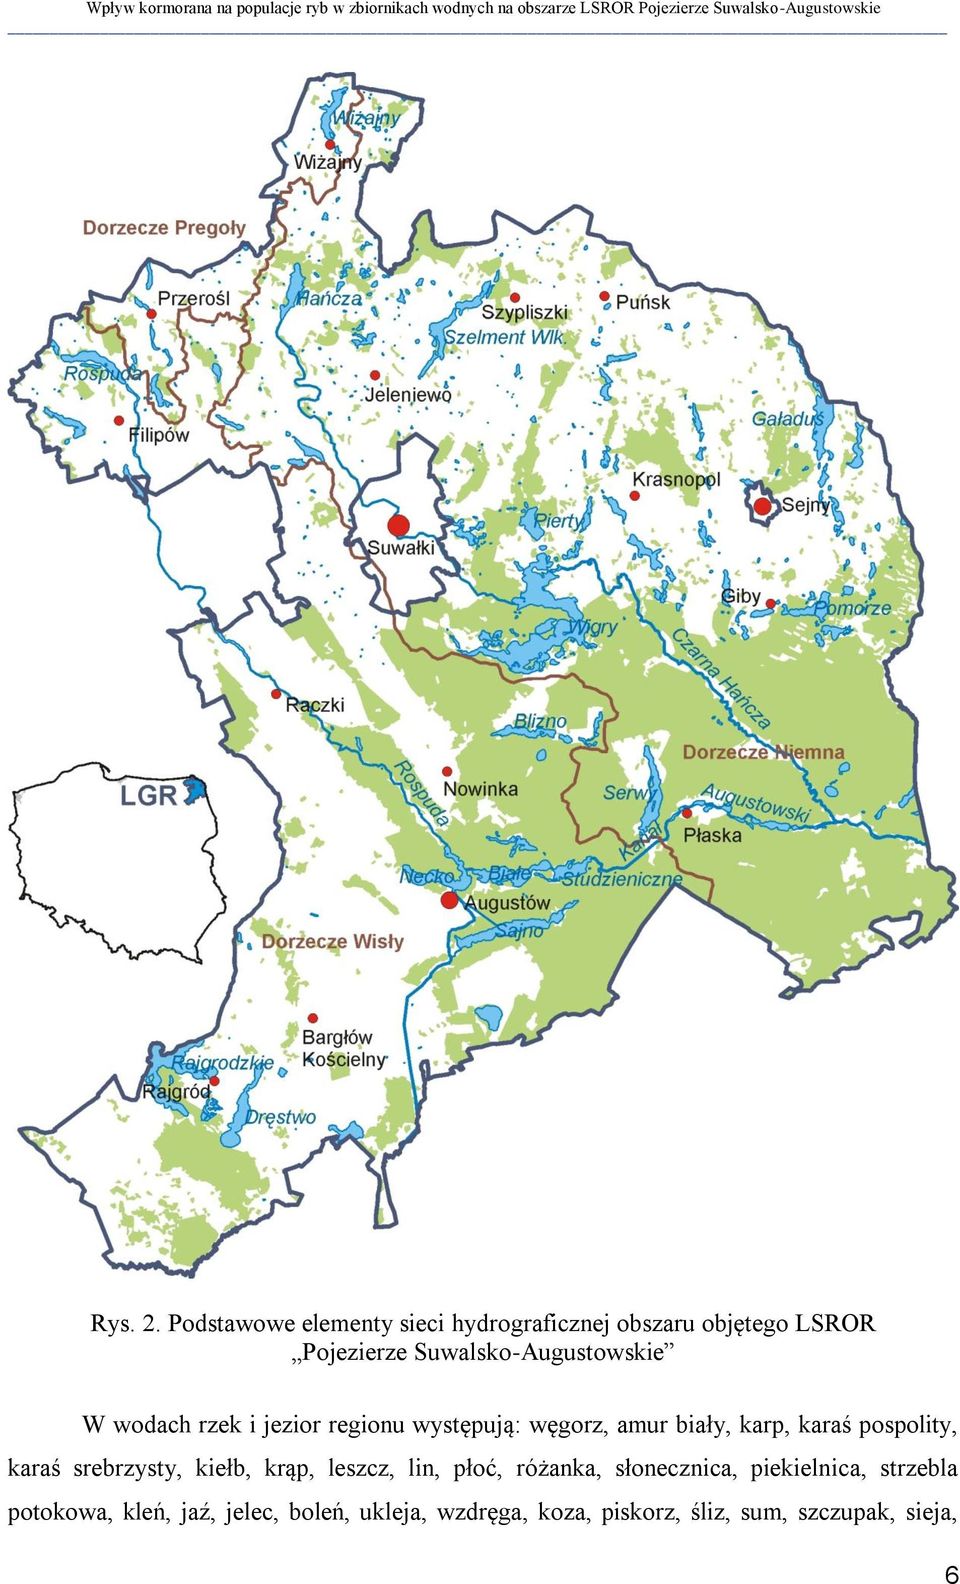 Suwalsko-Augustowskie W wodach rzek i jezior regionu występują: węgorz, amur biały, karp, karaś